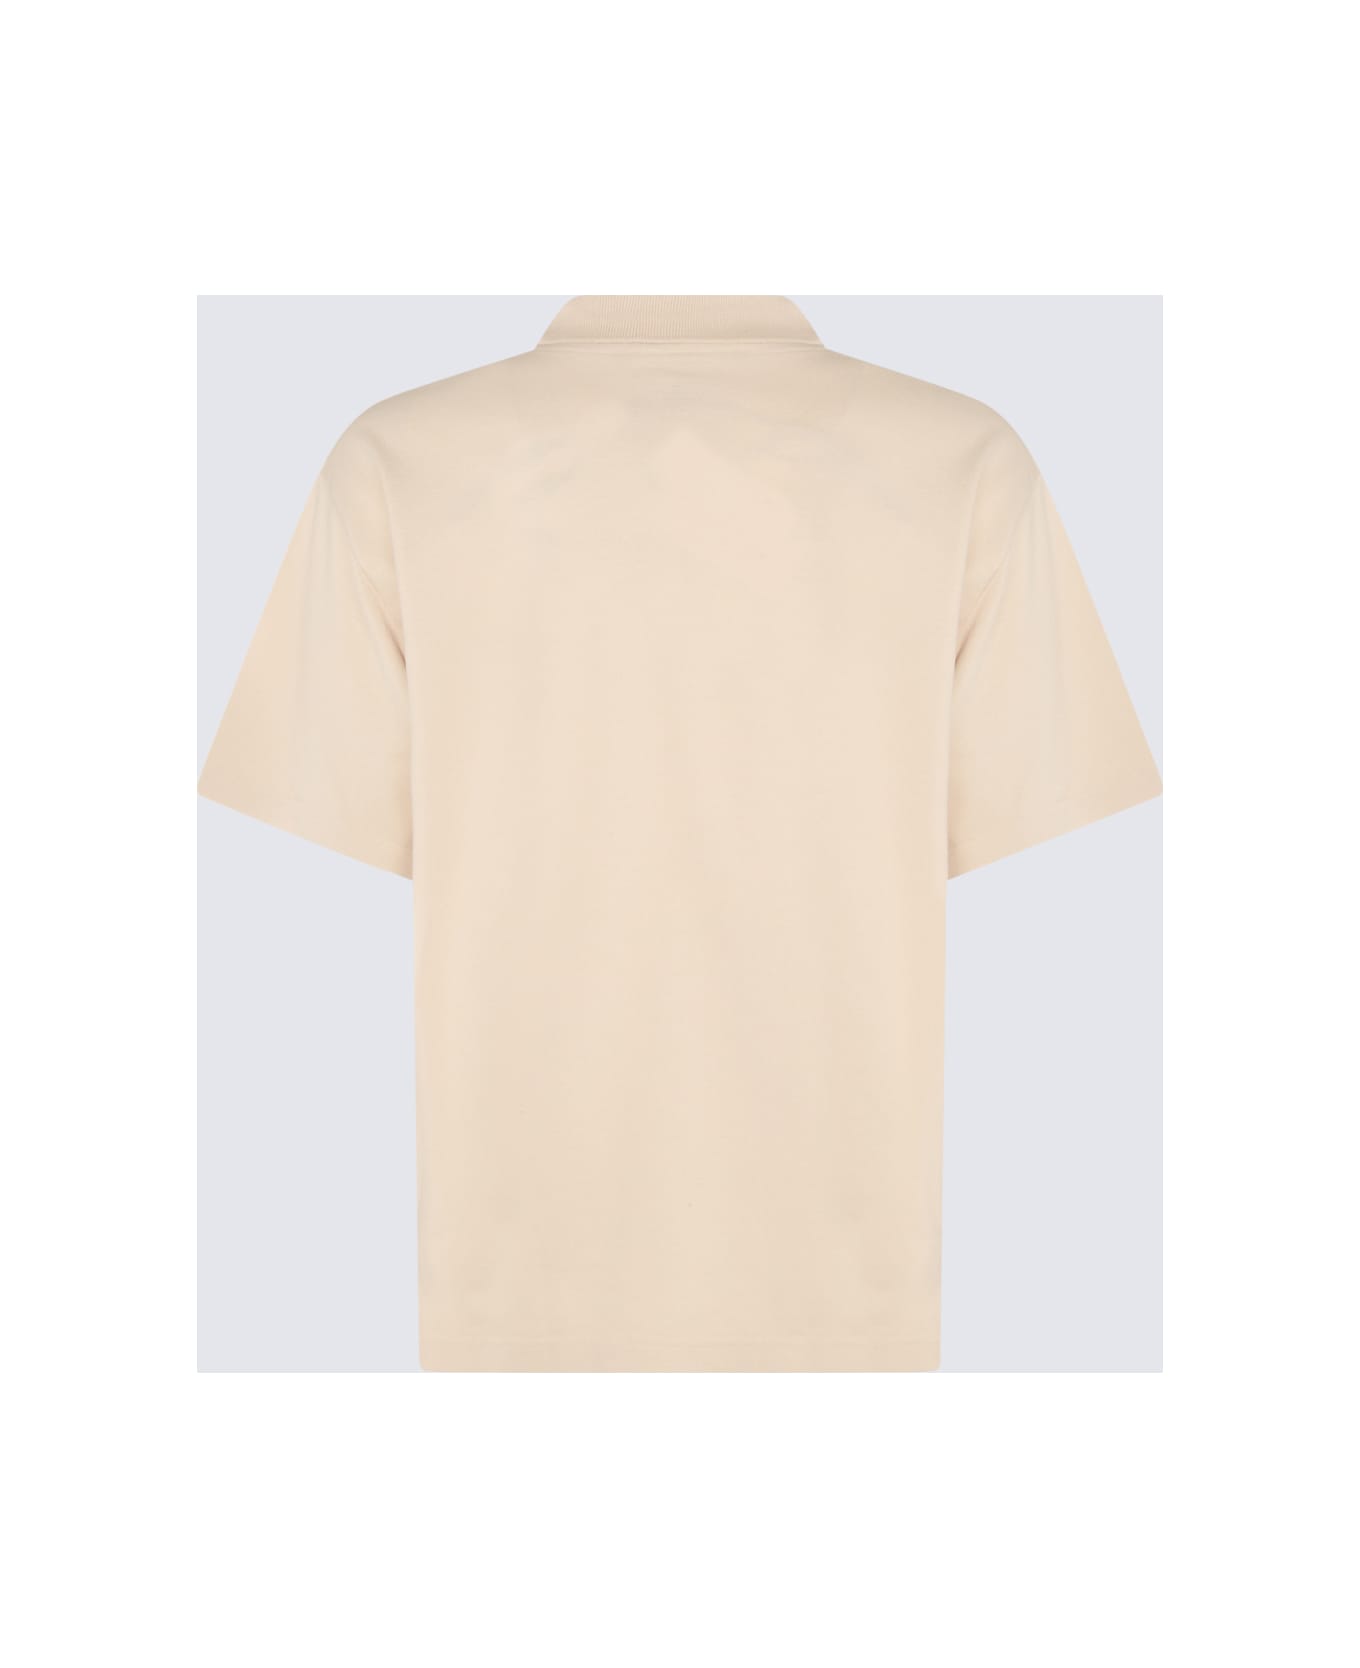 Maison Kitsuné Beige Cotton Polo Shirt - PAPER